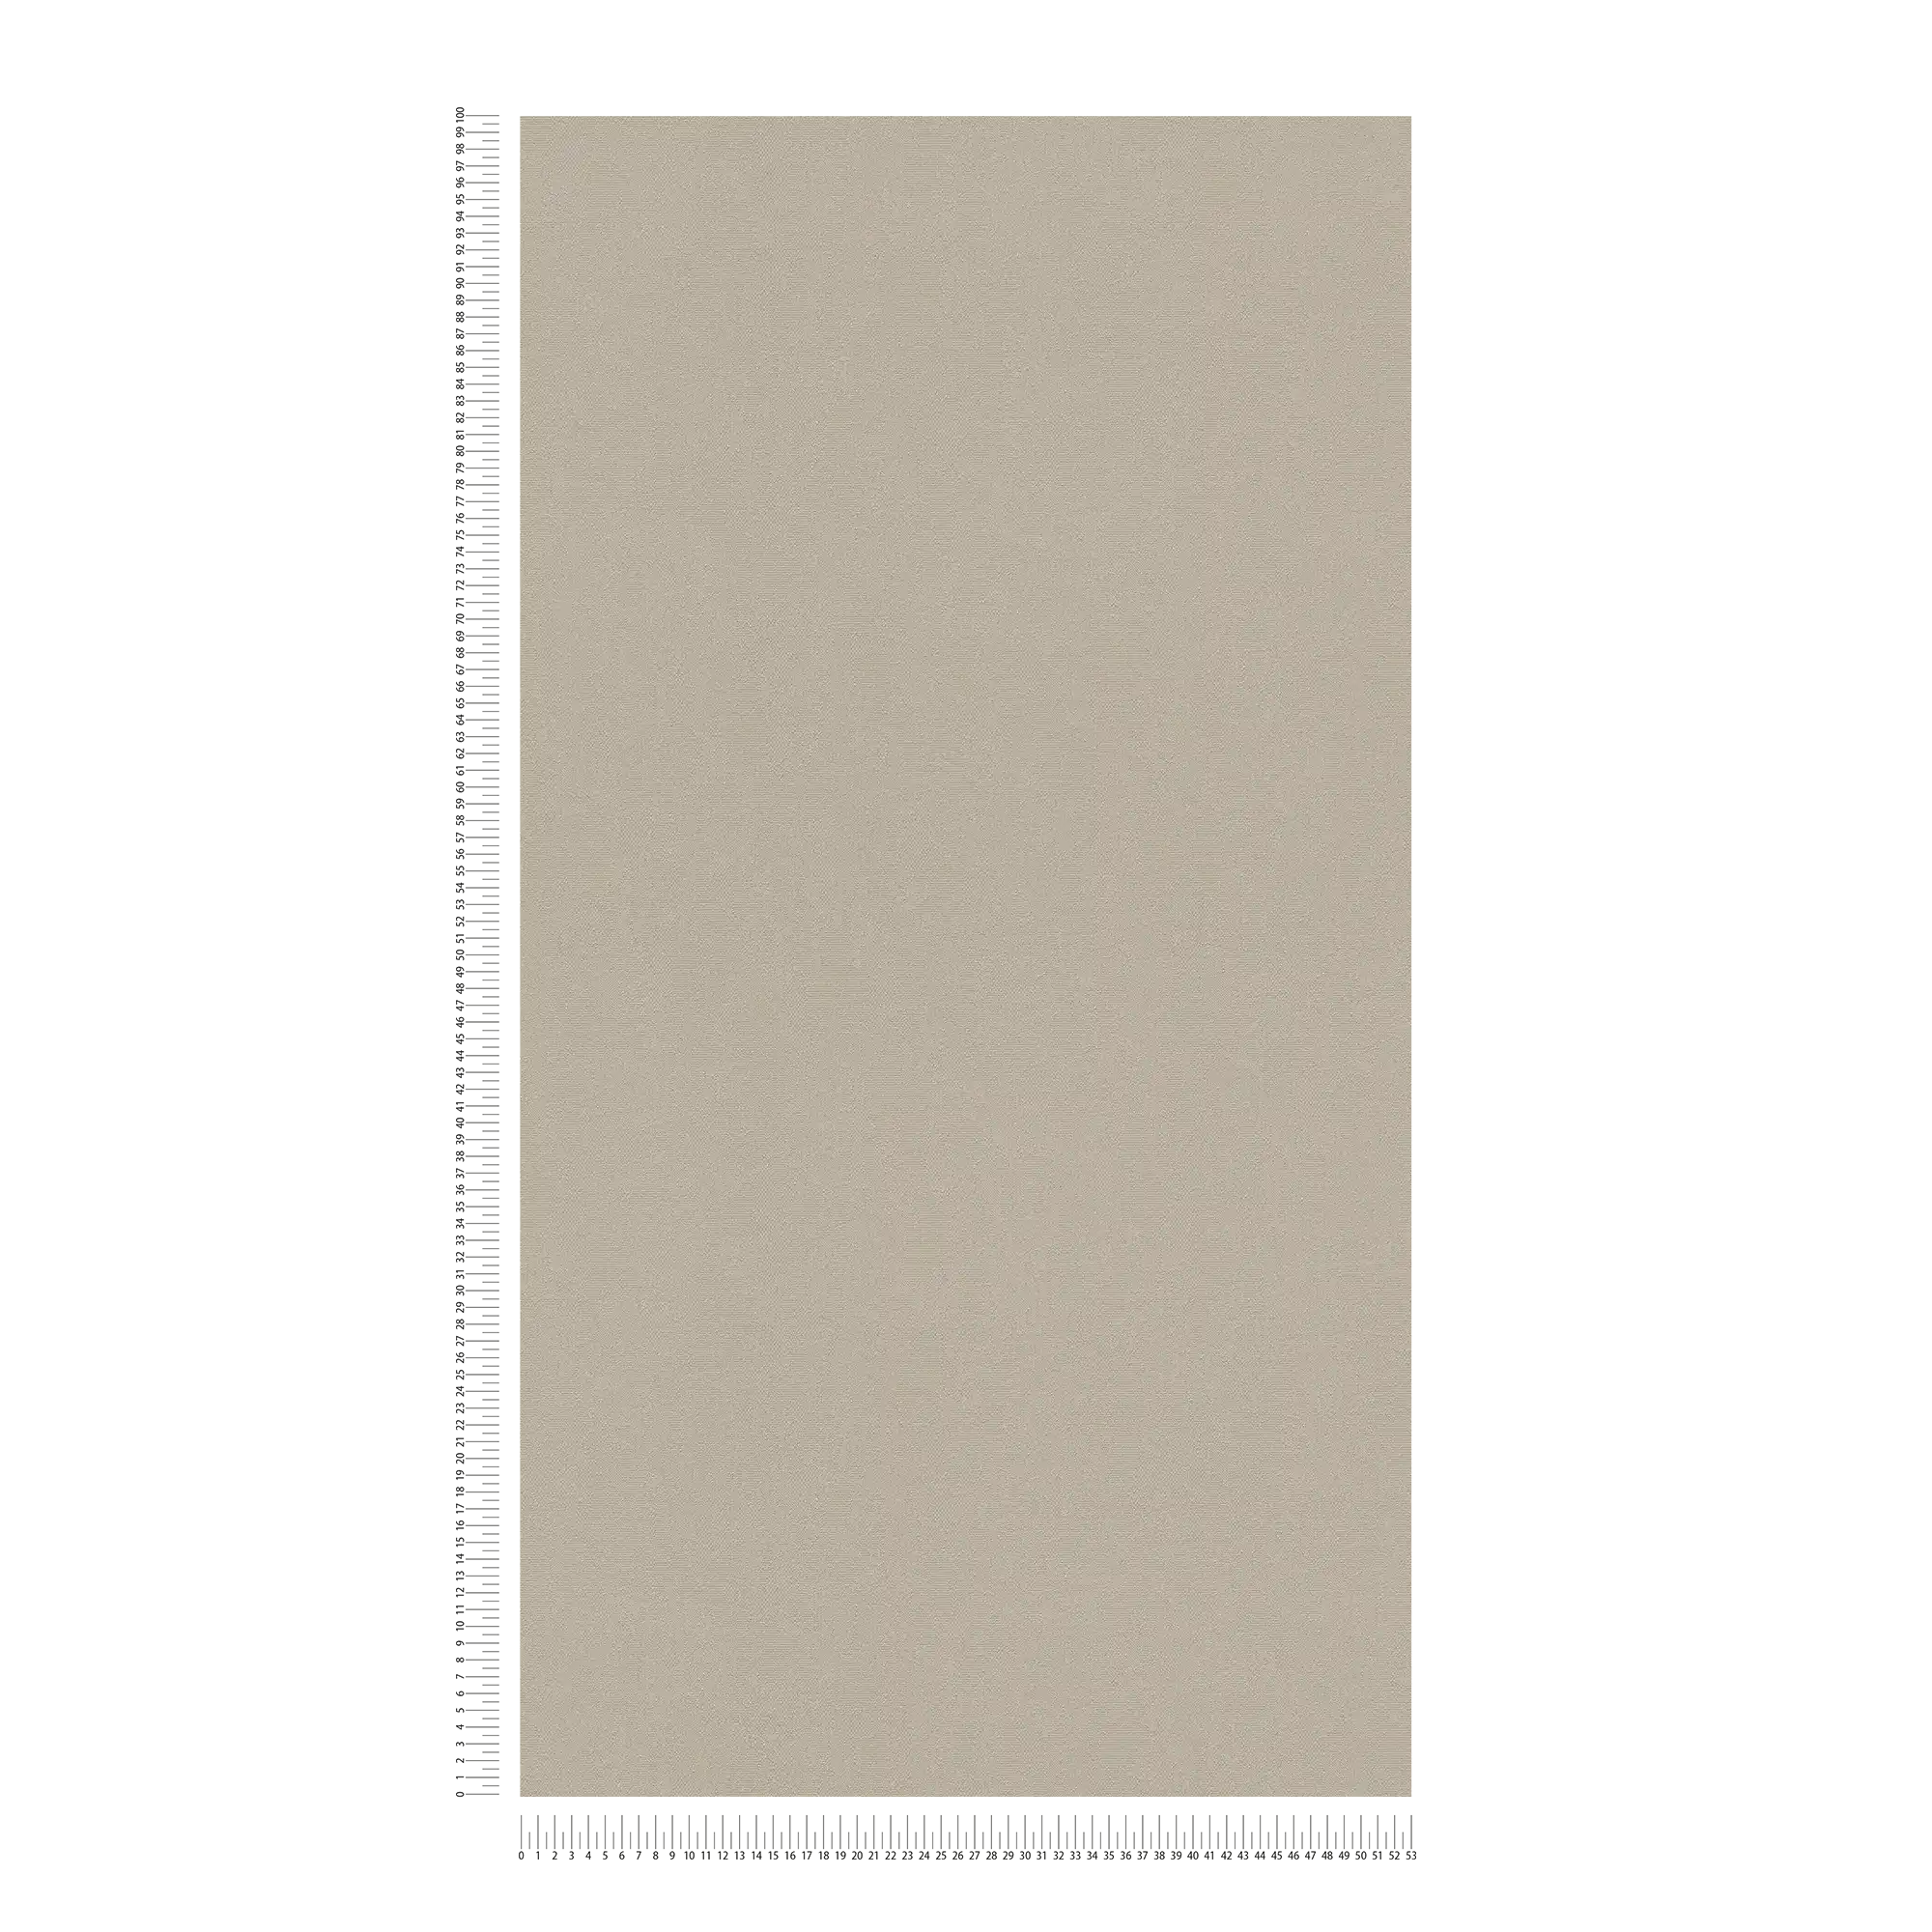             Papel pintado de unidad neutra gris-beige con superficie texturizada
        